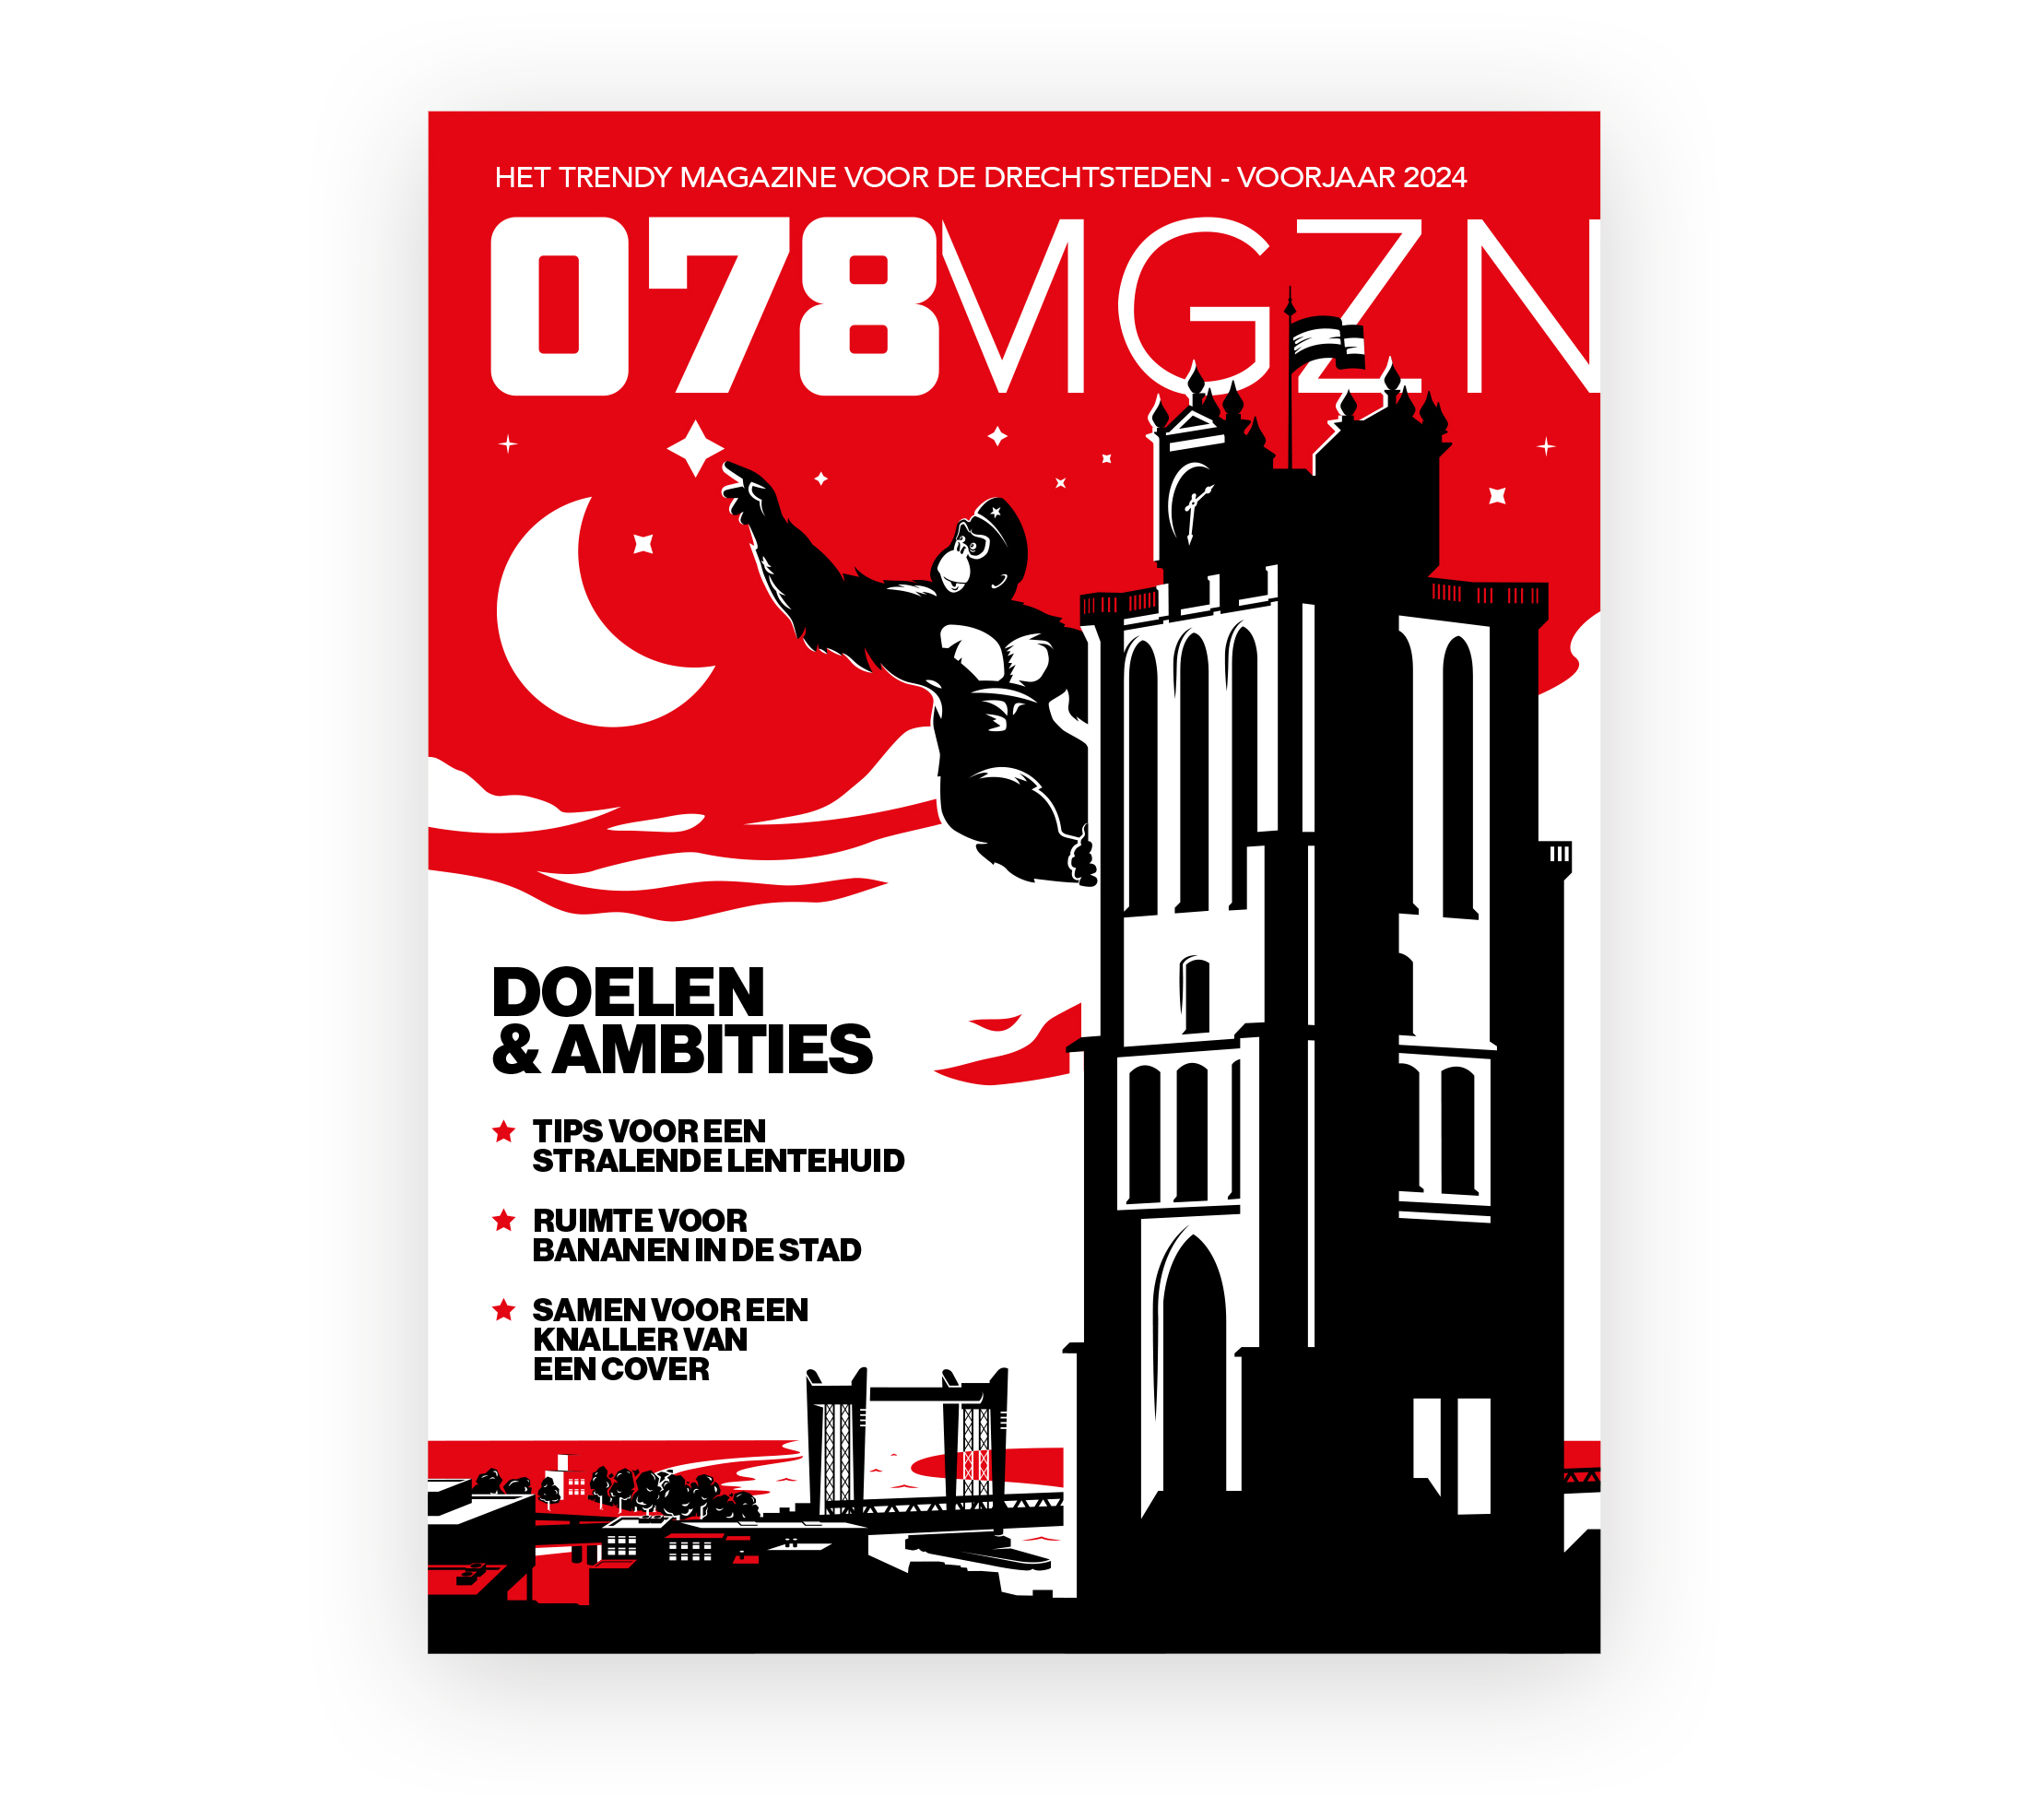 Cover van magazine 078MGZN, voorjaar 2024